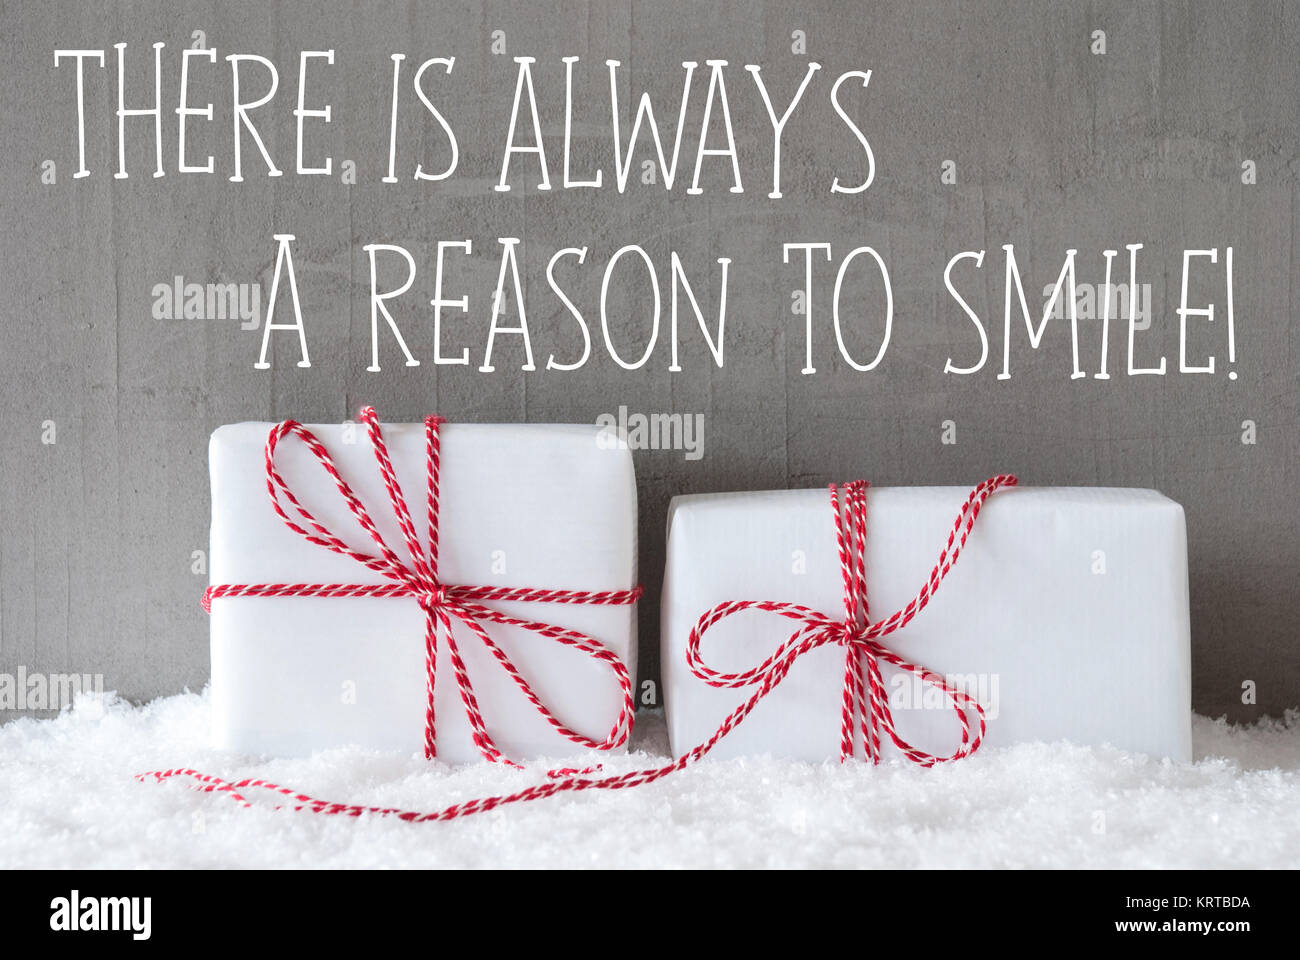 Texto en inglés citar siempre hay una razón para sonreír. Dos blancos  regalos de Navidad o regalos en la nieve. Muro de cemento como fondo.  Estilo urbano y moderno. Tarjeta para cumpleaños